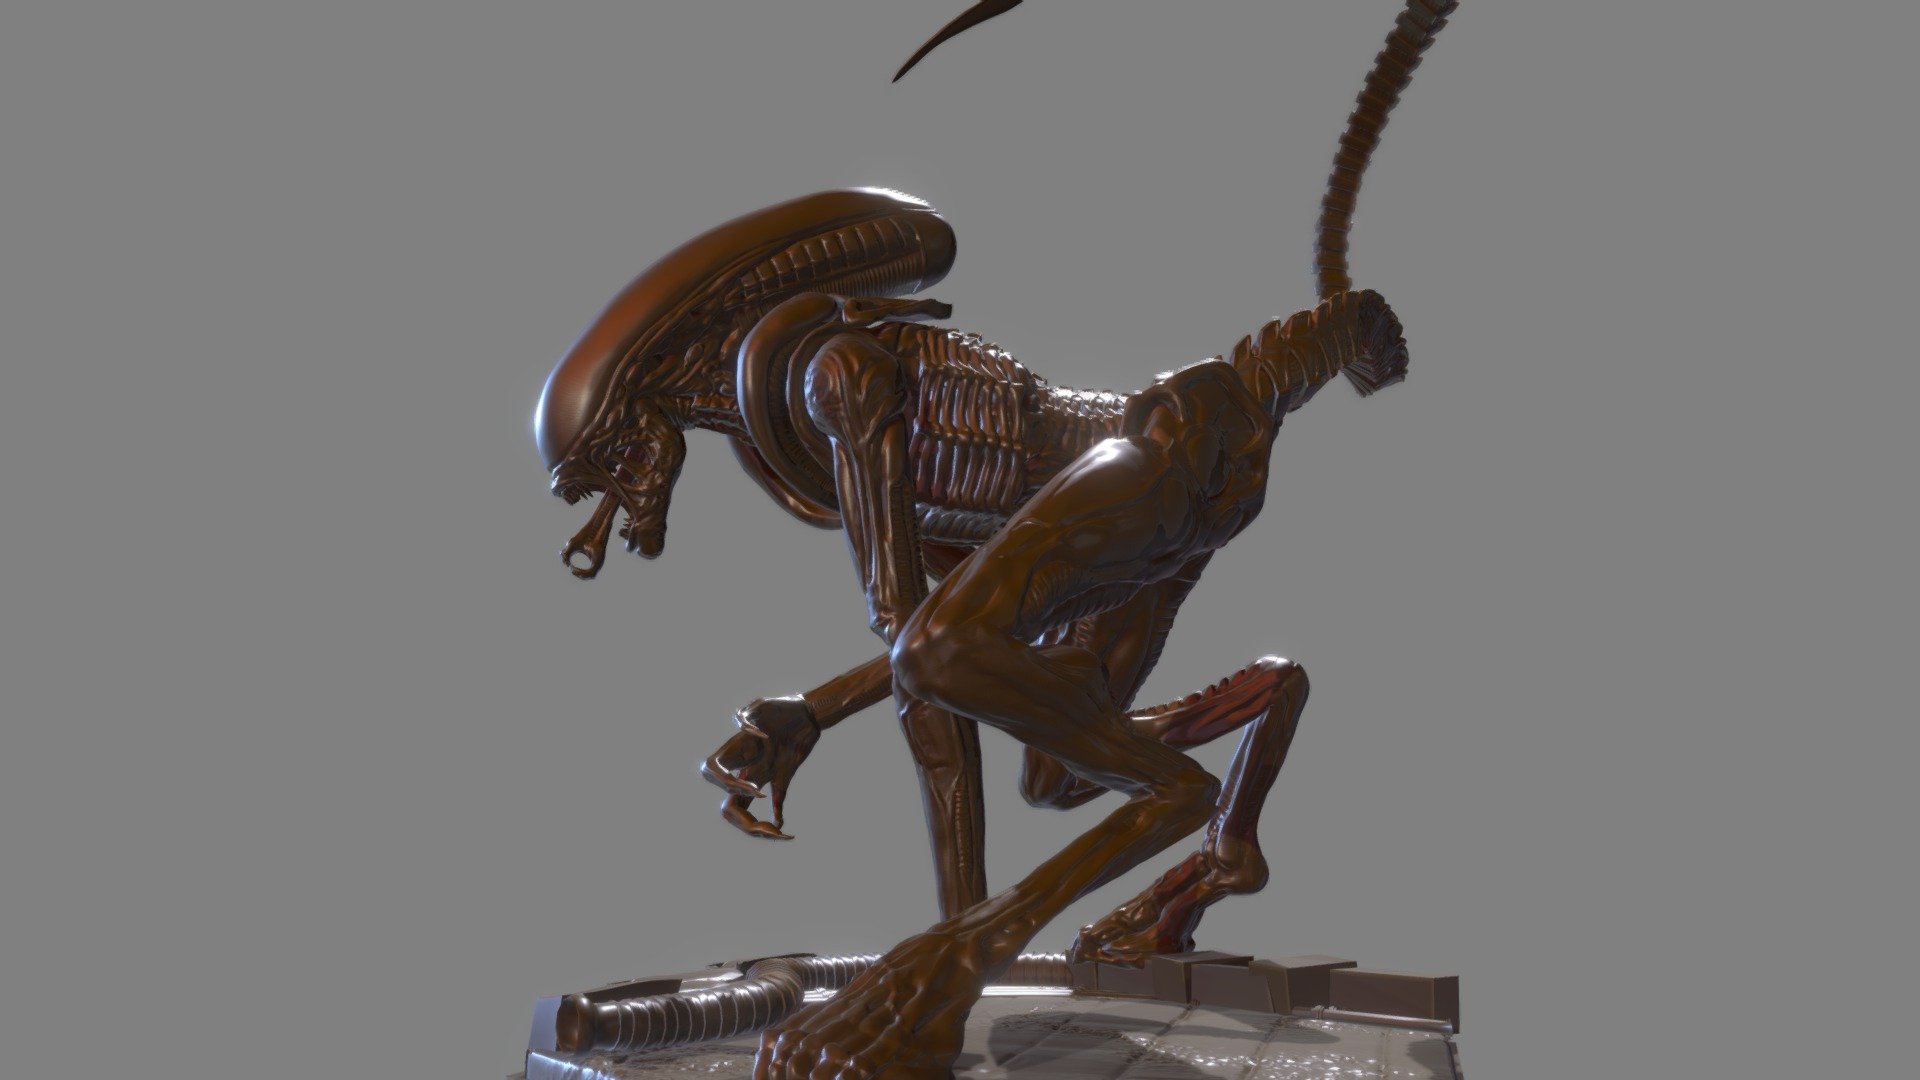 Alien Dog from alien 3 test statue - Alien Dog - 3D model by thecreaturecreator1 3d model